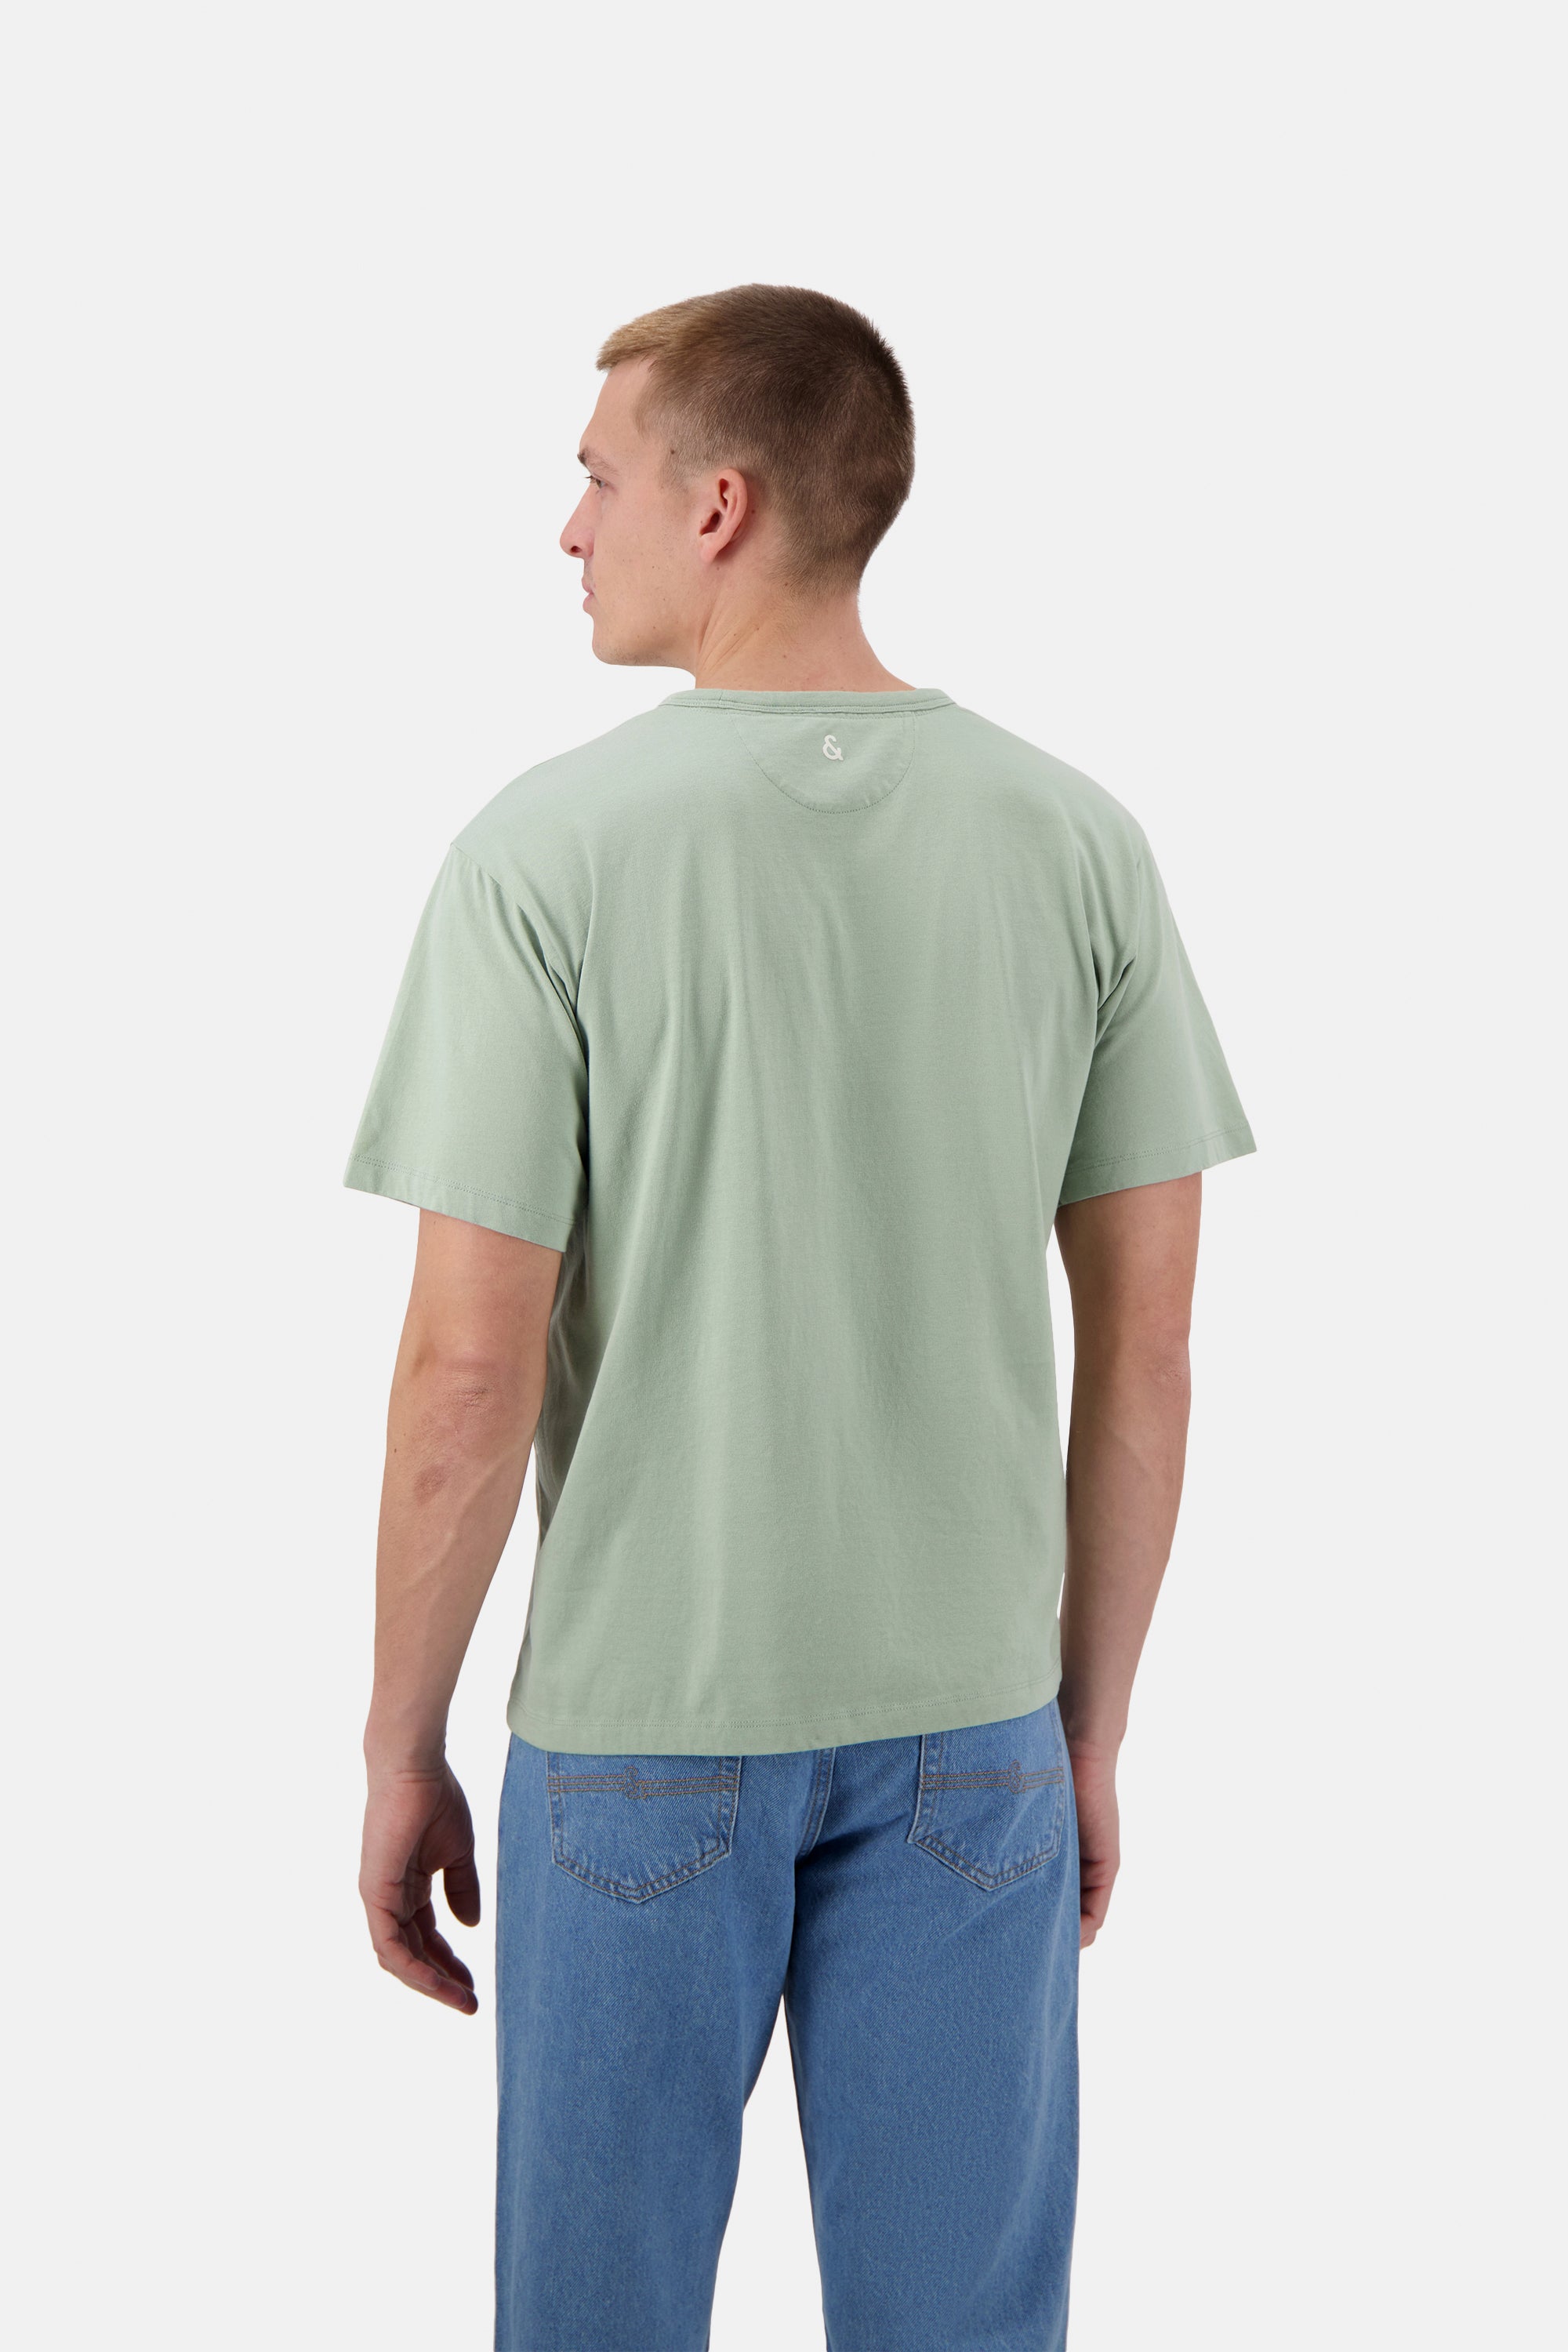 Herren T-Shirt, hellgrün, 100% Baumwolle von Colours & Sons